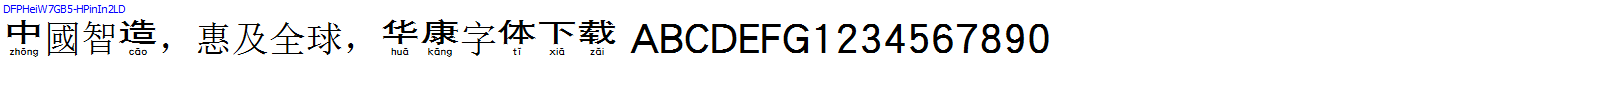 華康字體DFPHeiW7GB5-HPinIn2LD.TTF